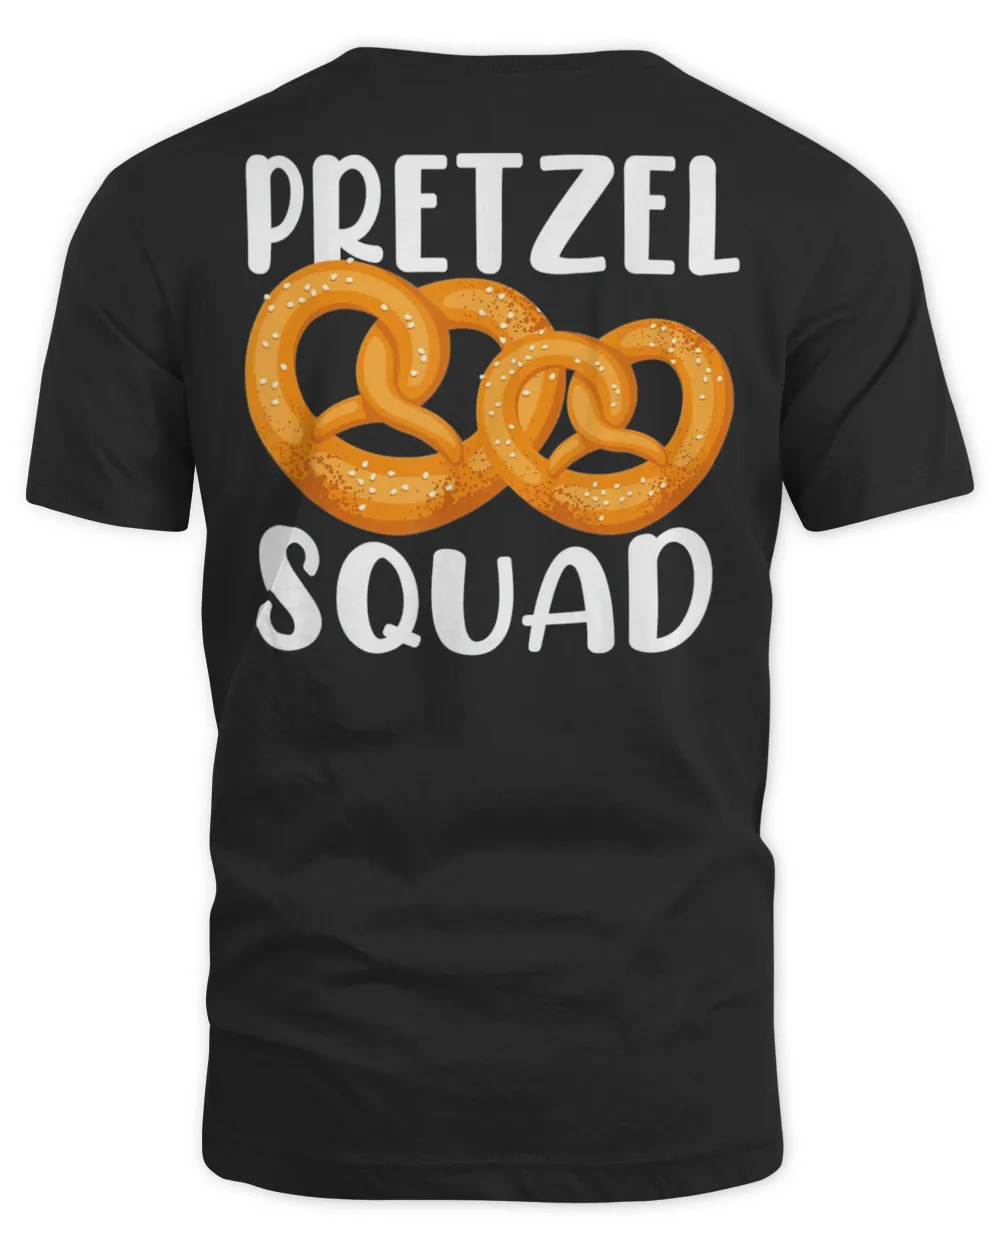 Pretzel Squad T-Shirt